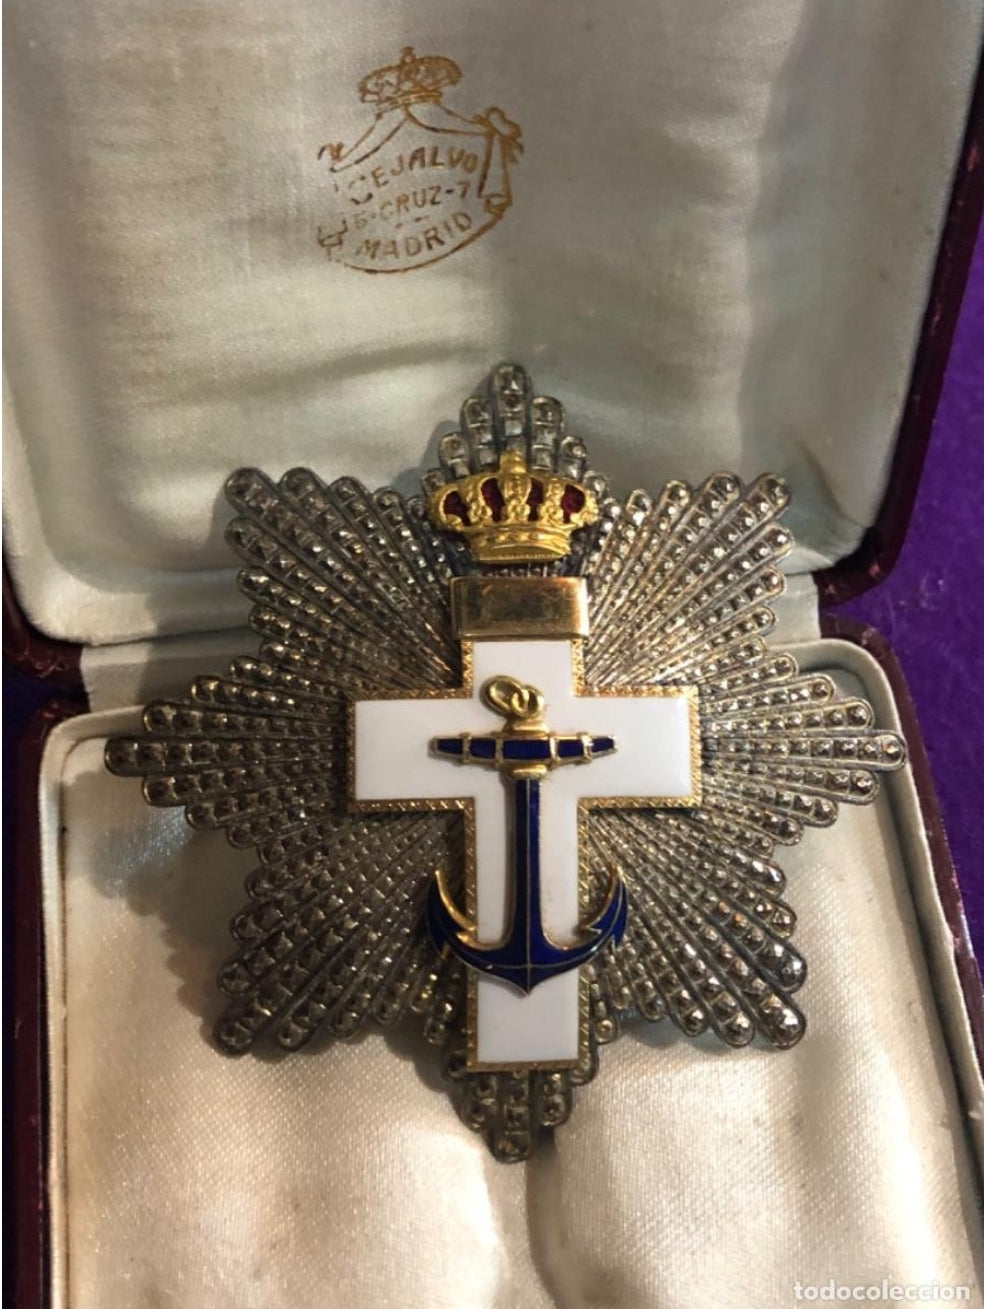 Placa al Mérito Naval Blanca Alfonso XIII Cejalvo 